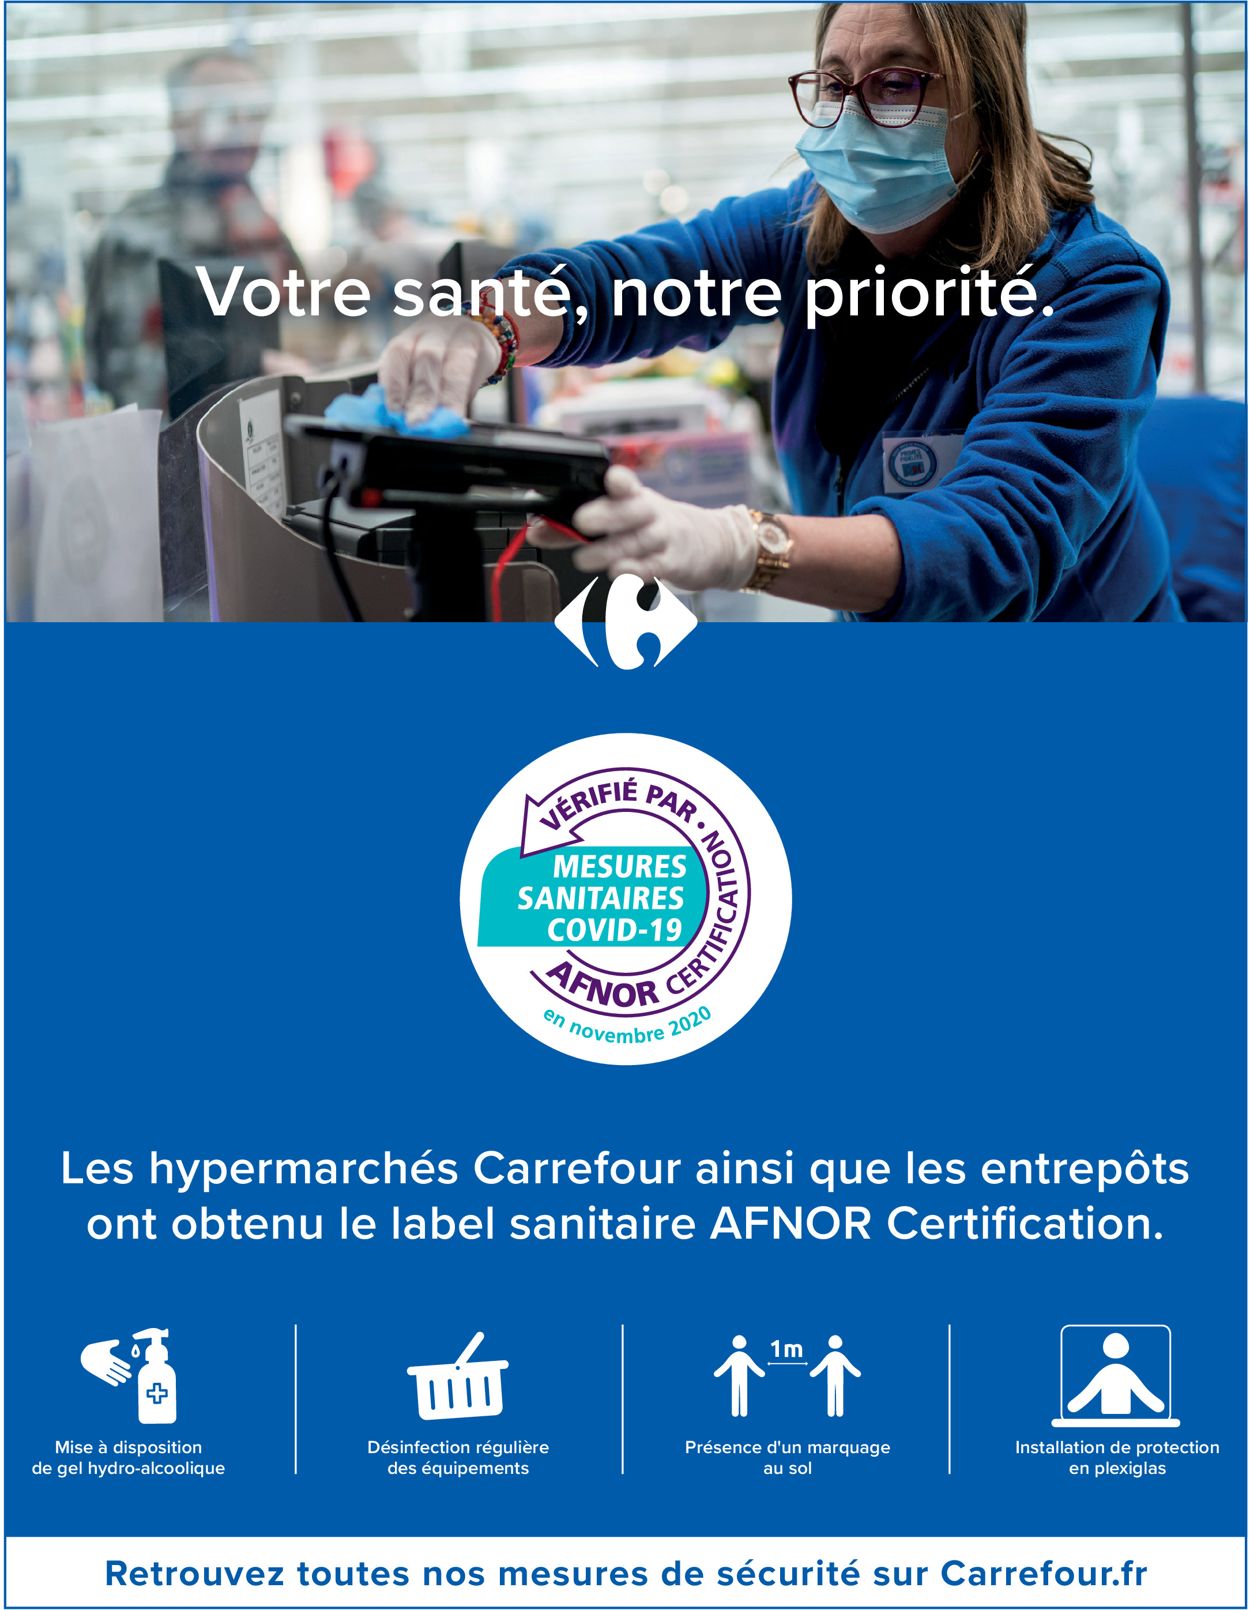 Carrefour Catalogue du 01.06.2021